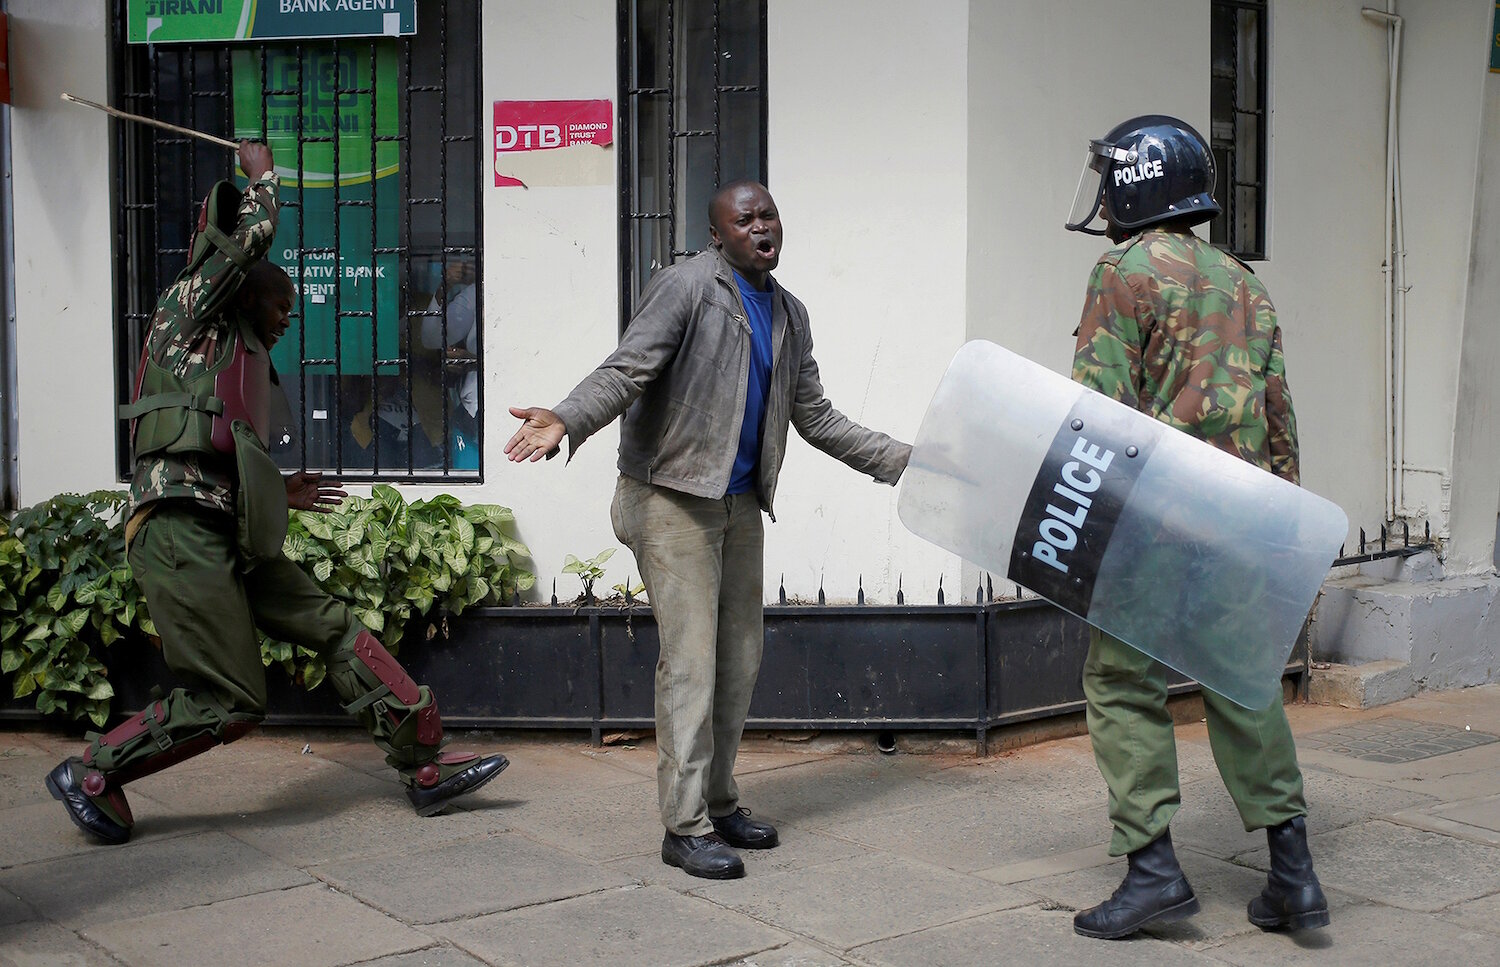 <p>16 мая. Найроби, Кения. Полицейский бьет демонстранта во время акции протеста.</p>